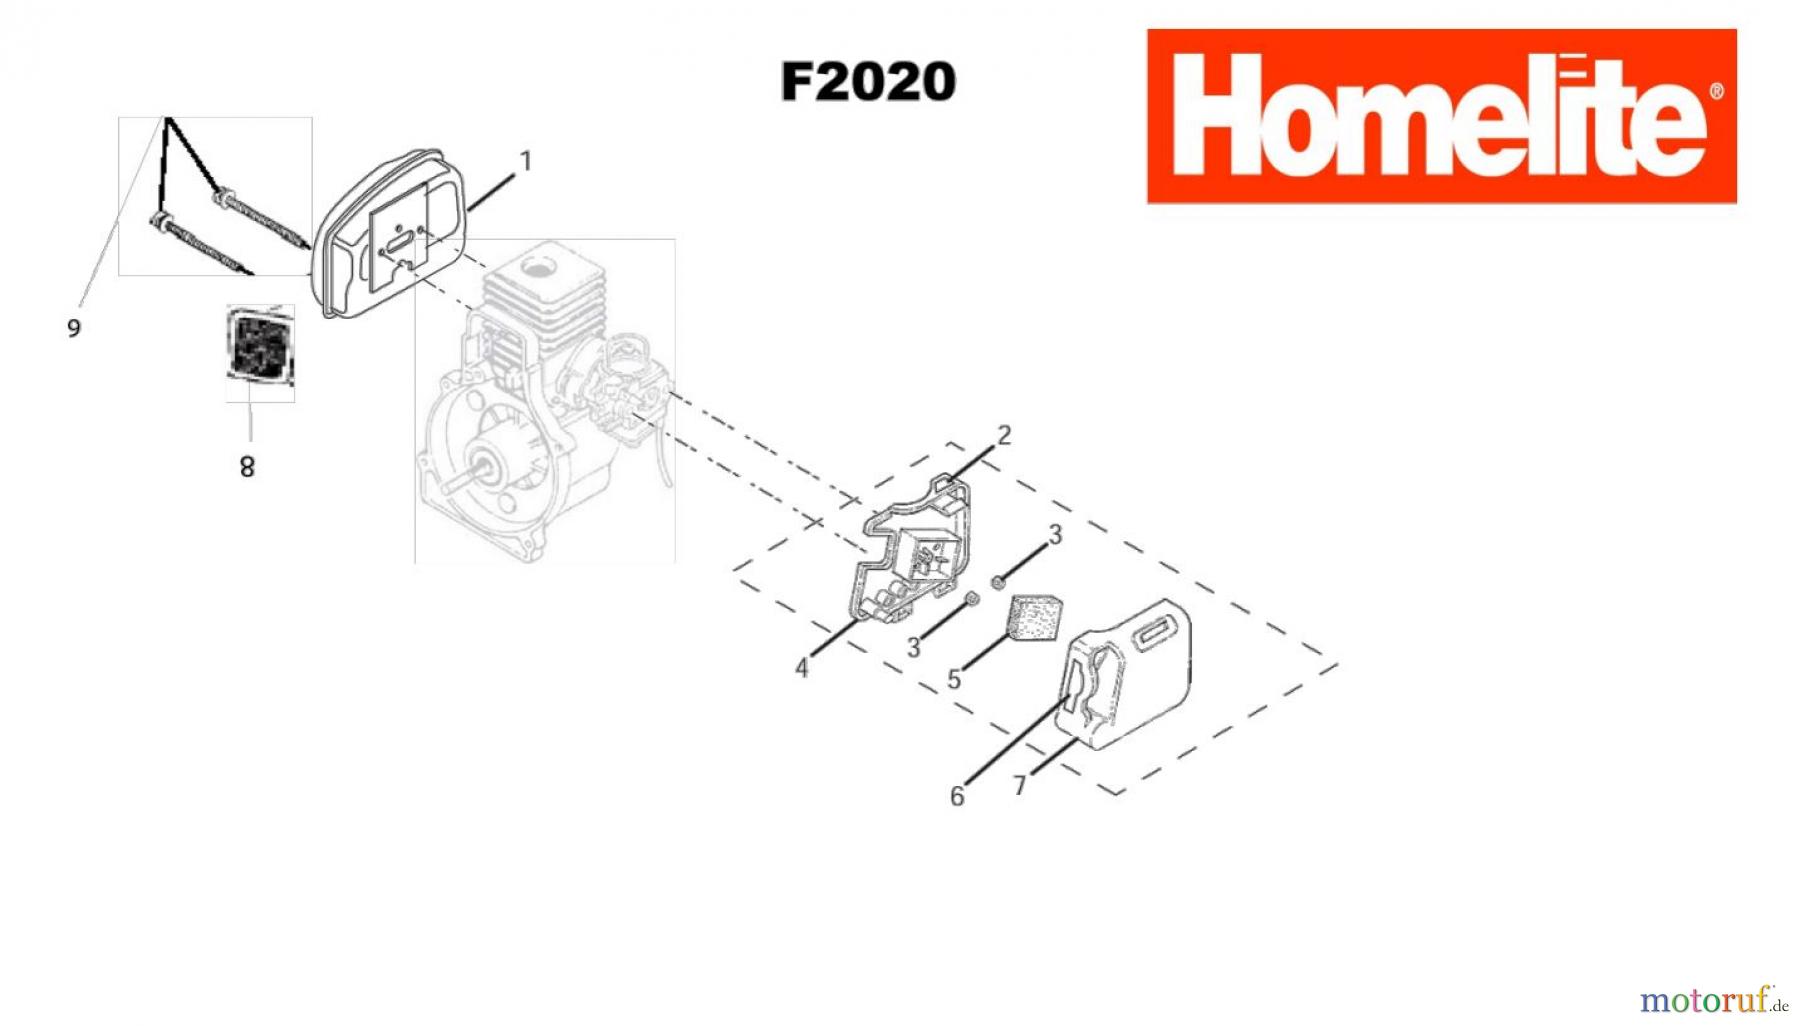  Homelite Trimmer Benzin F2020 (Baujahr 2004-2010) Auspuff, Luftfilter